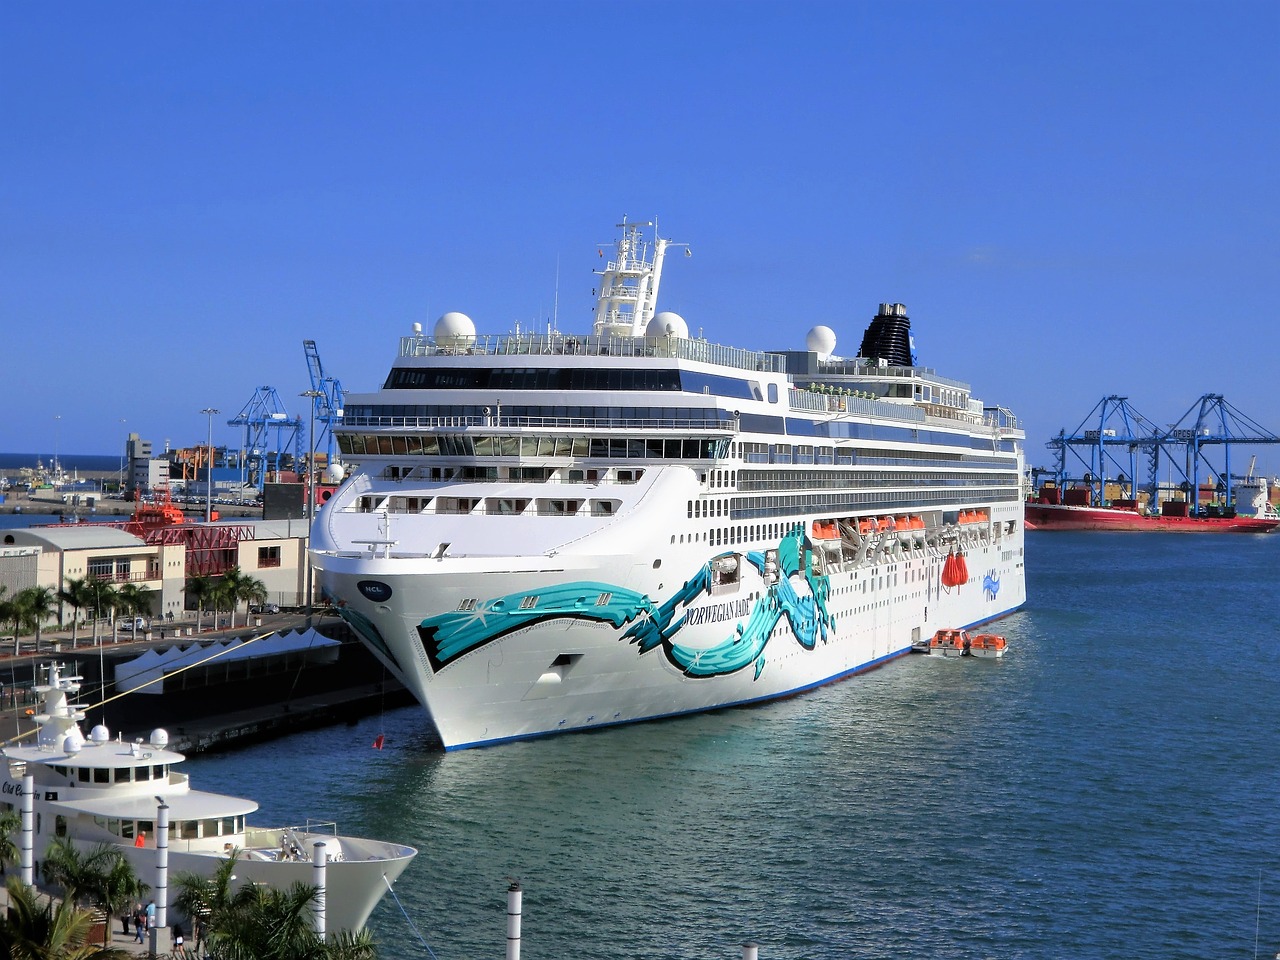 transport cruise boat holiday free photo